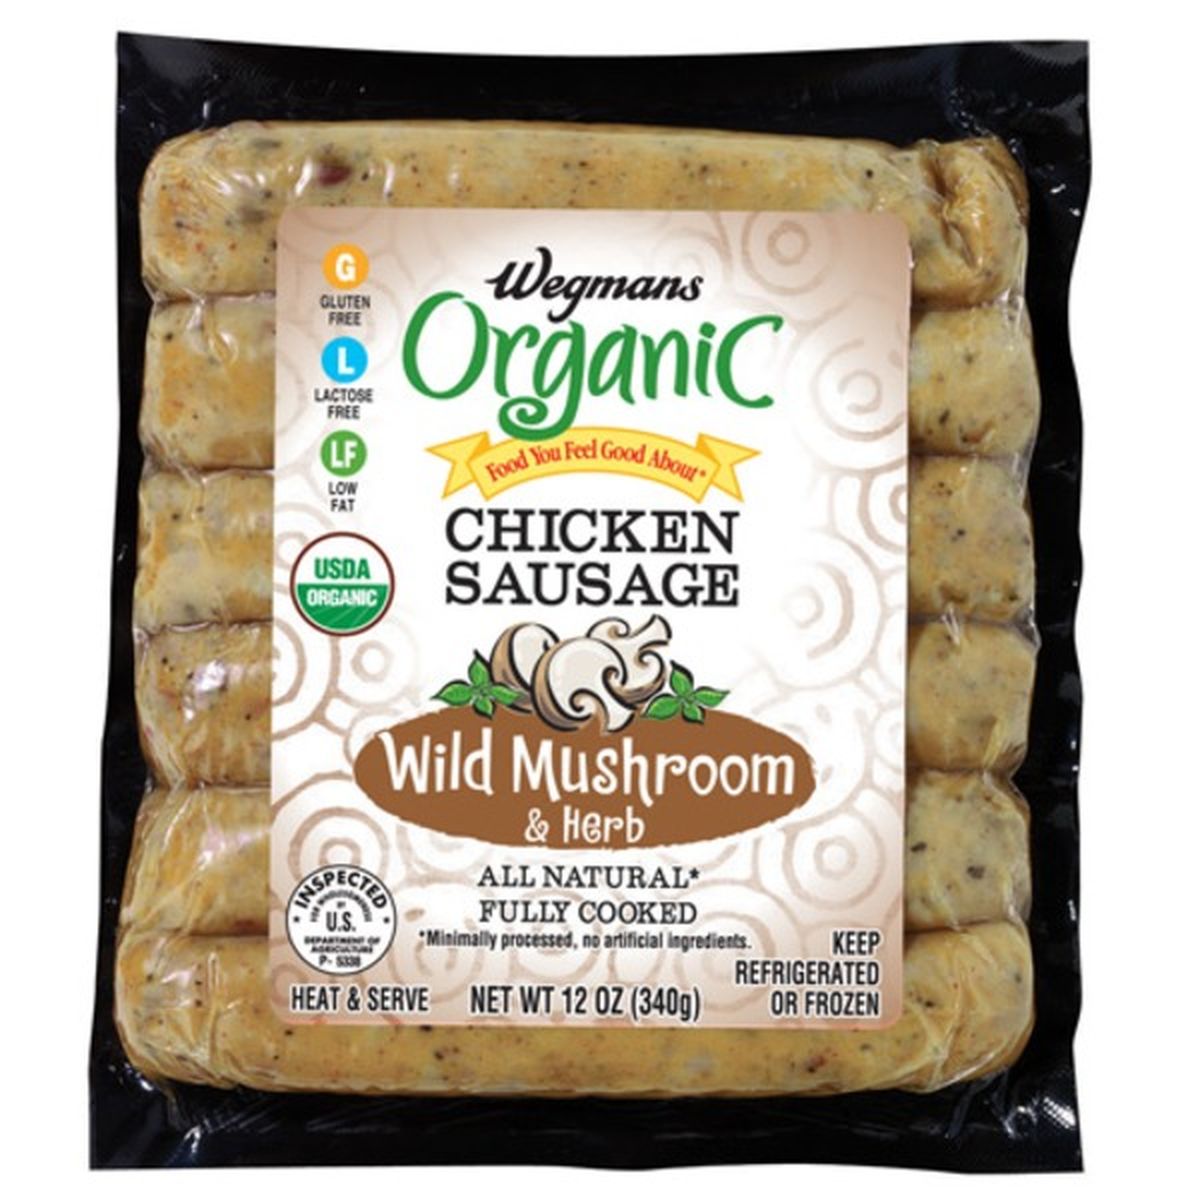 Calories in Wegmans Organic Wild Mushroom & Herb Chicken Sausage